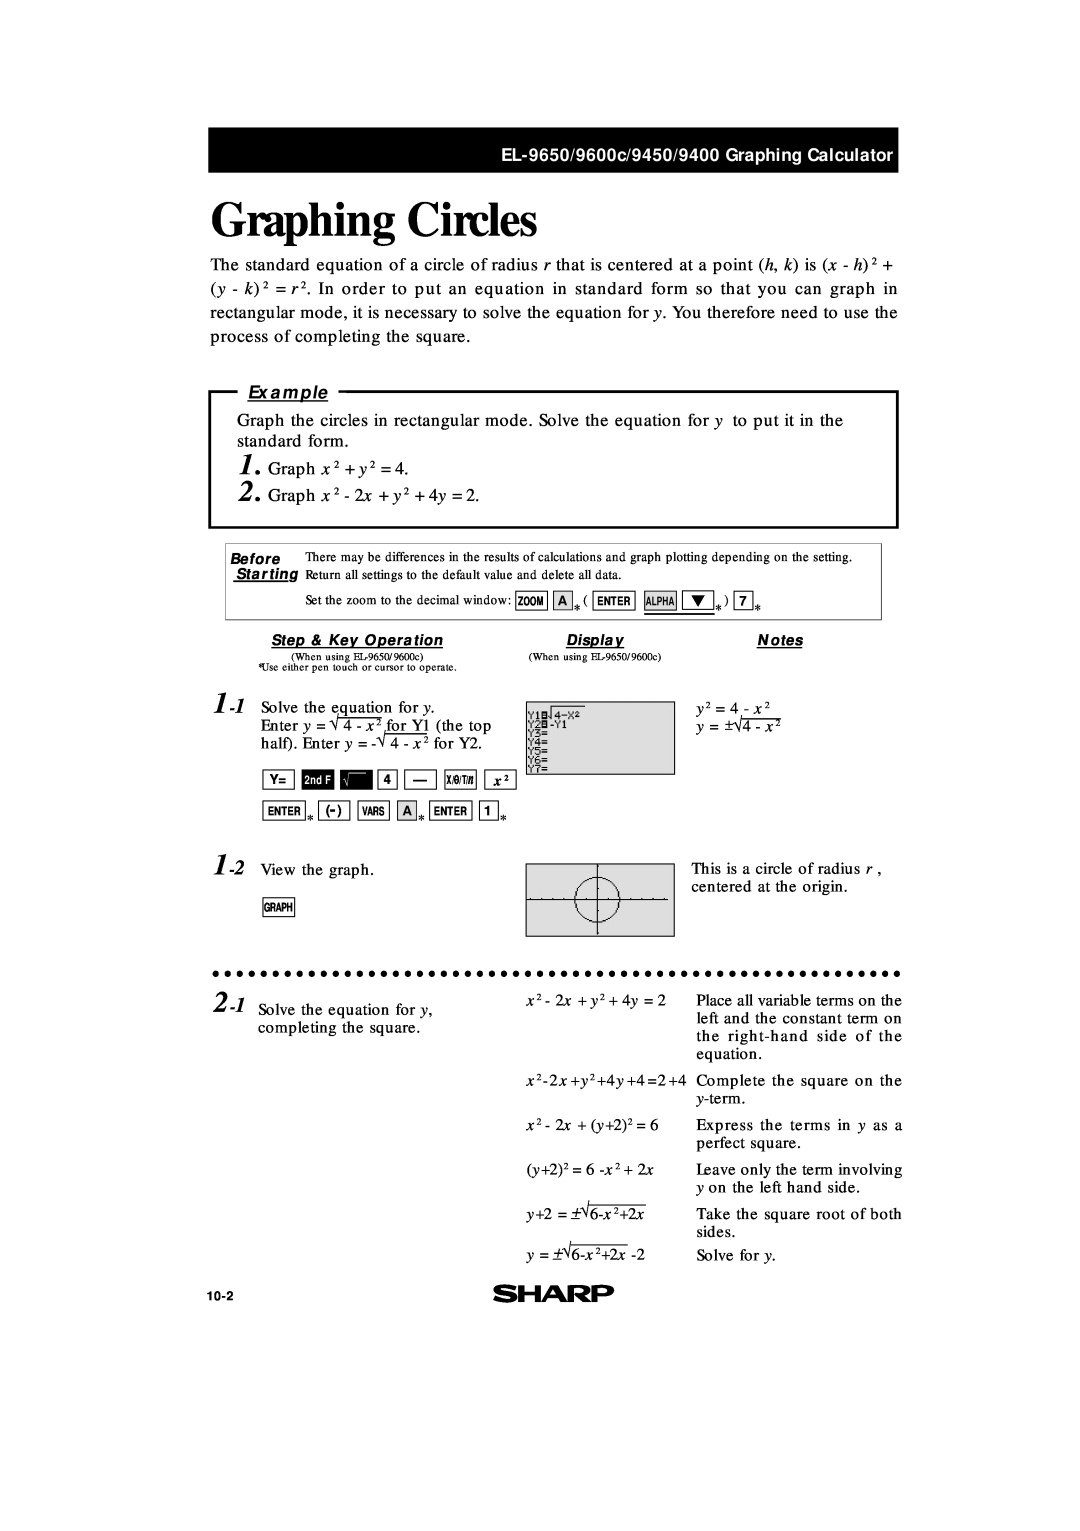 Sharp EL-9400 manual Graphing Circles, EL-9650/9600c/9450/9400 Graphing Calculator, Example, Graph x 2 - 2x + y 2 + 4y = 